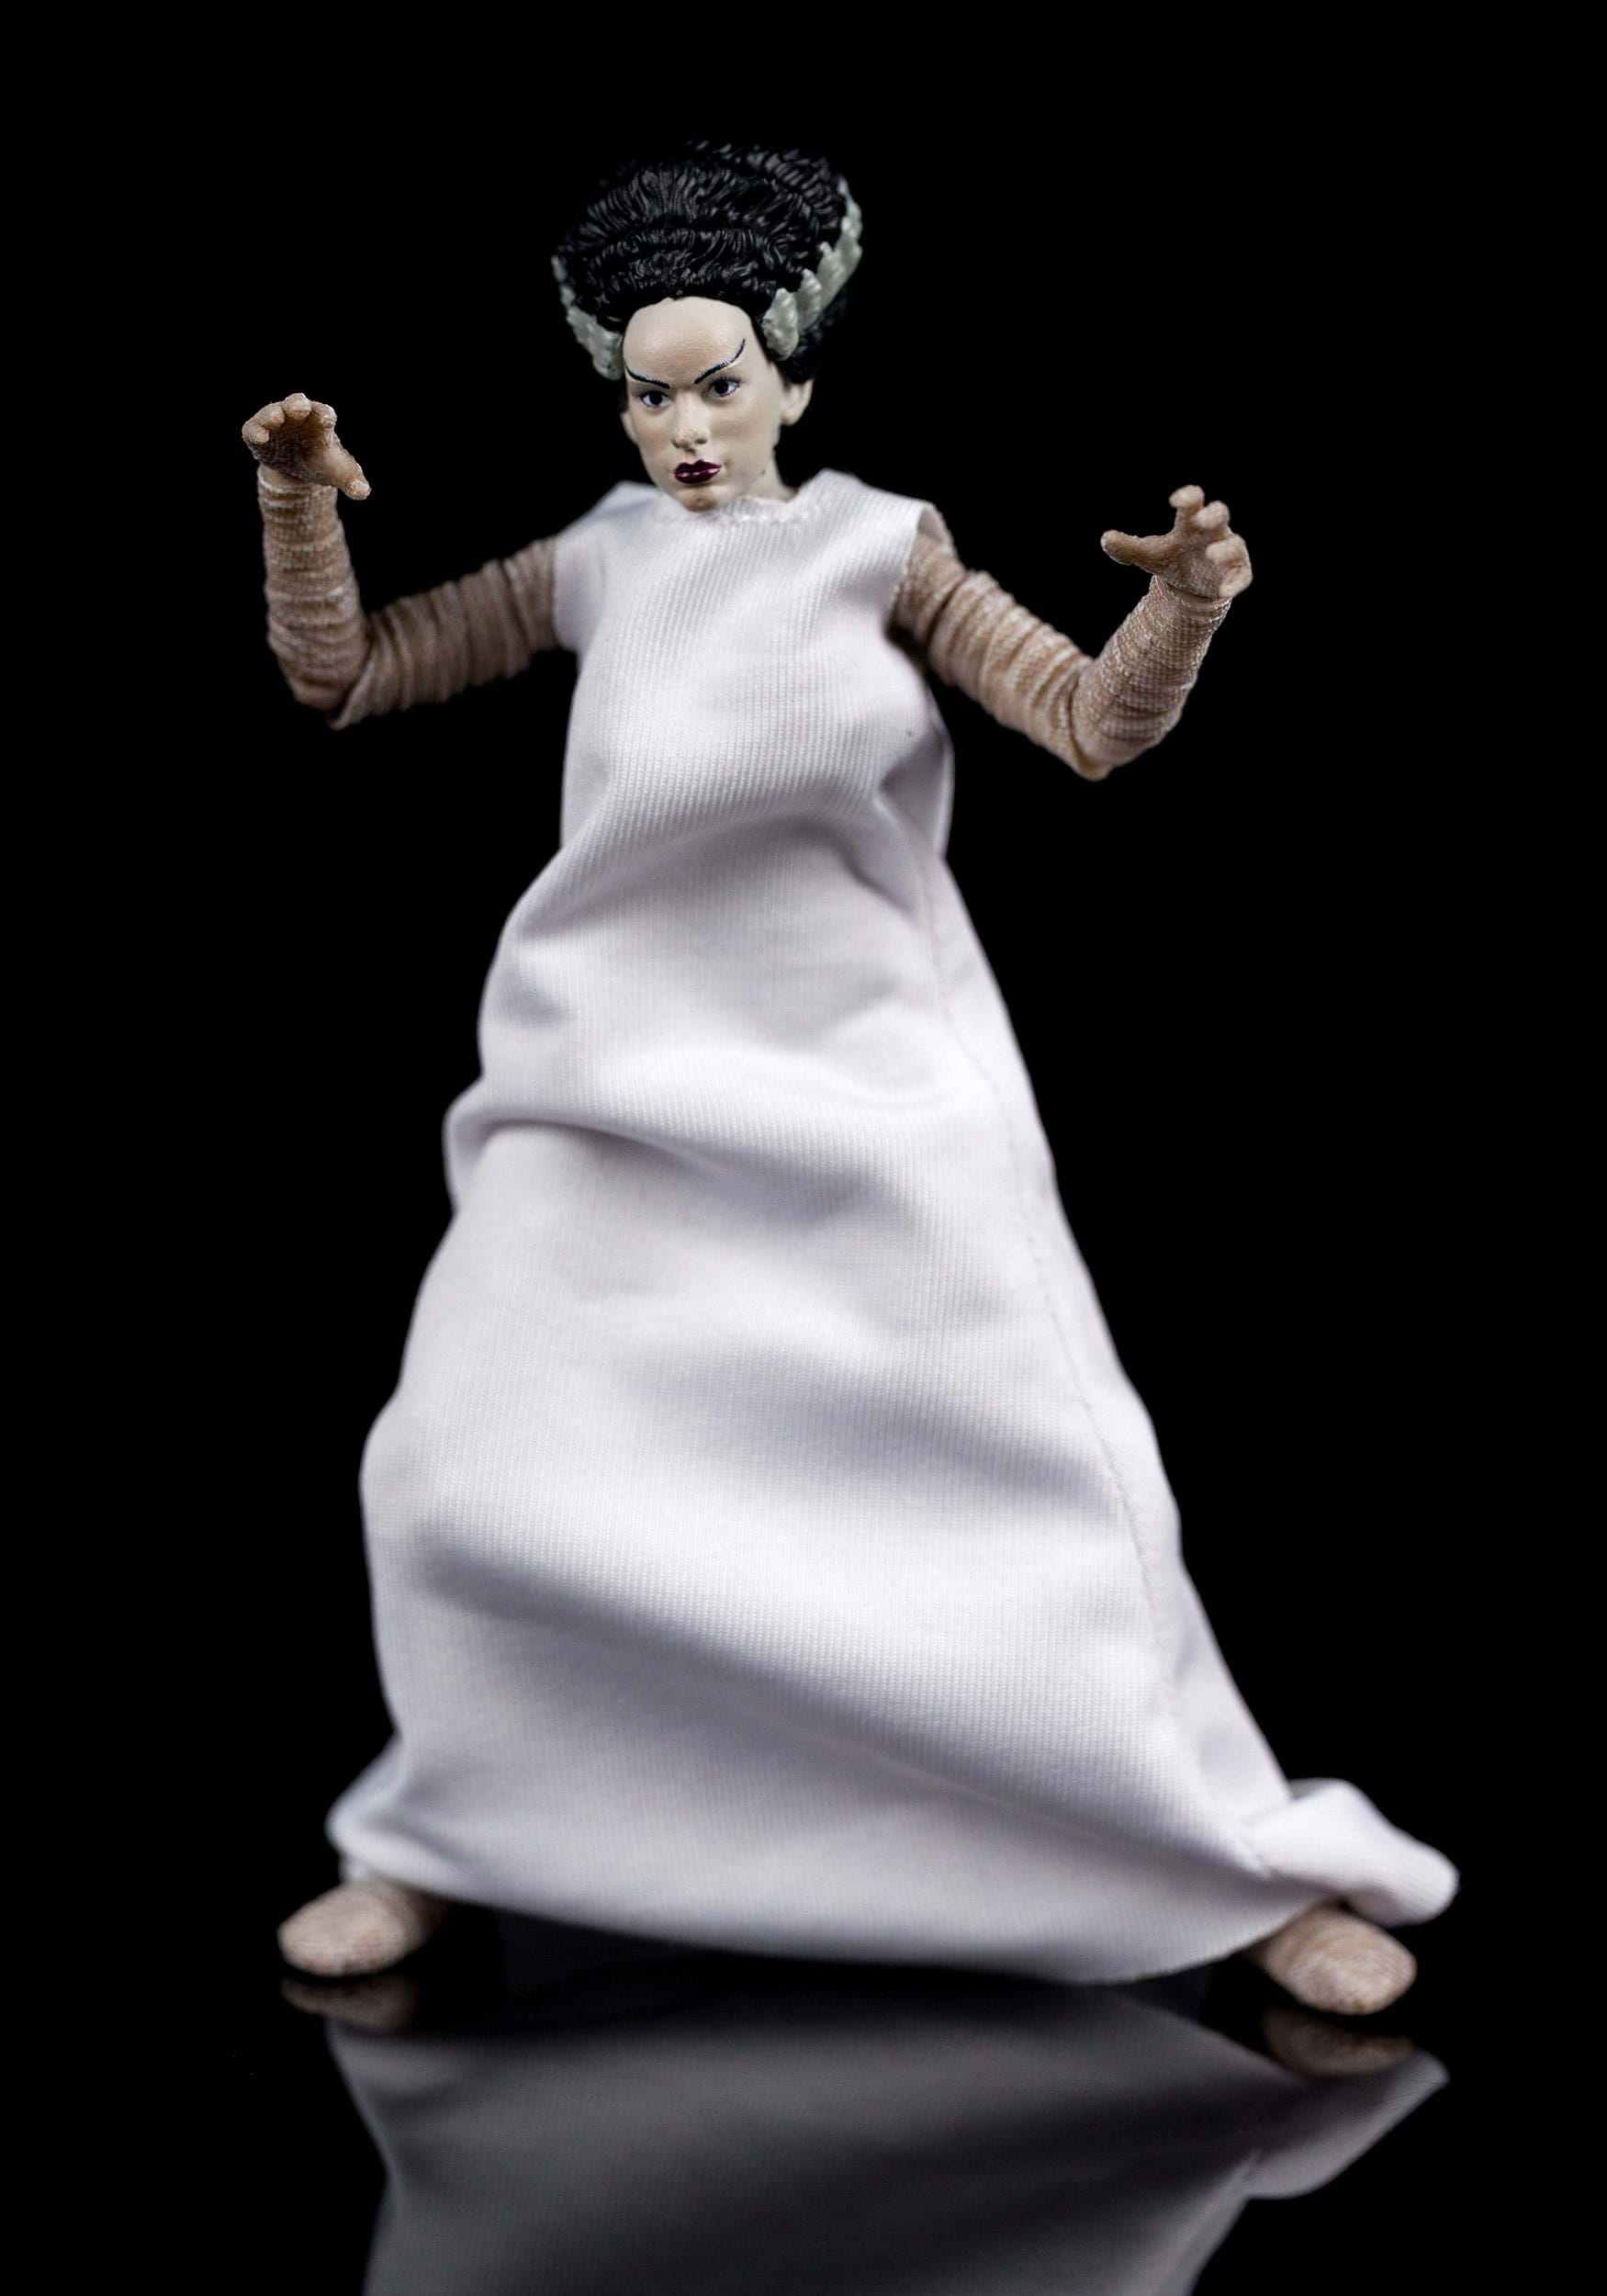 6-Inch Universal Monsters Bride Of Frankenstein Action Figure